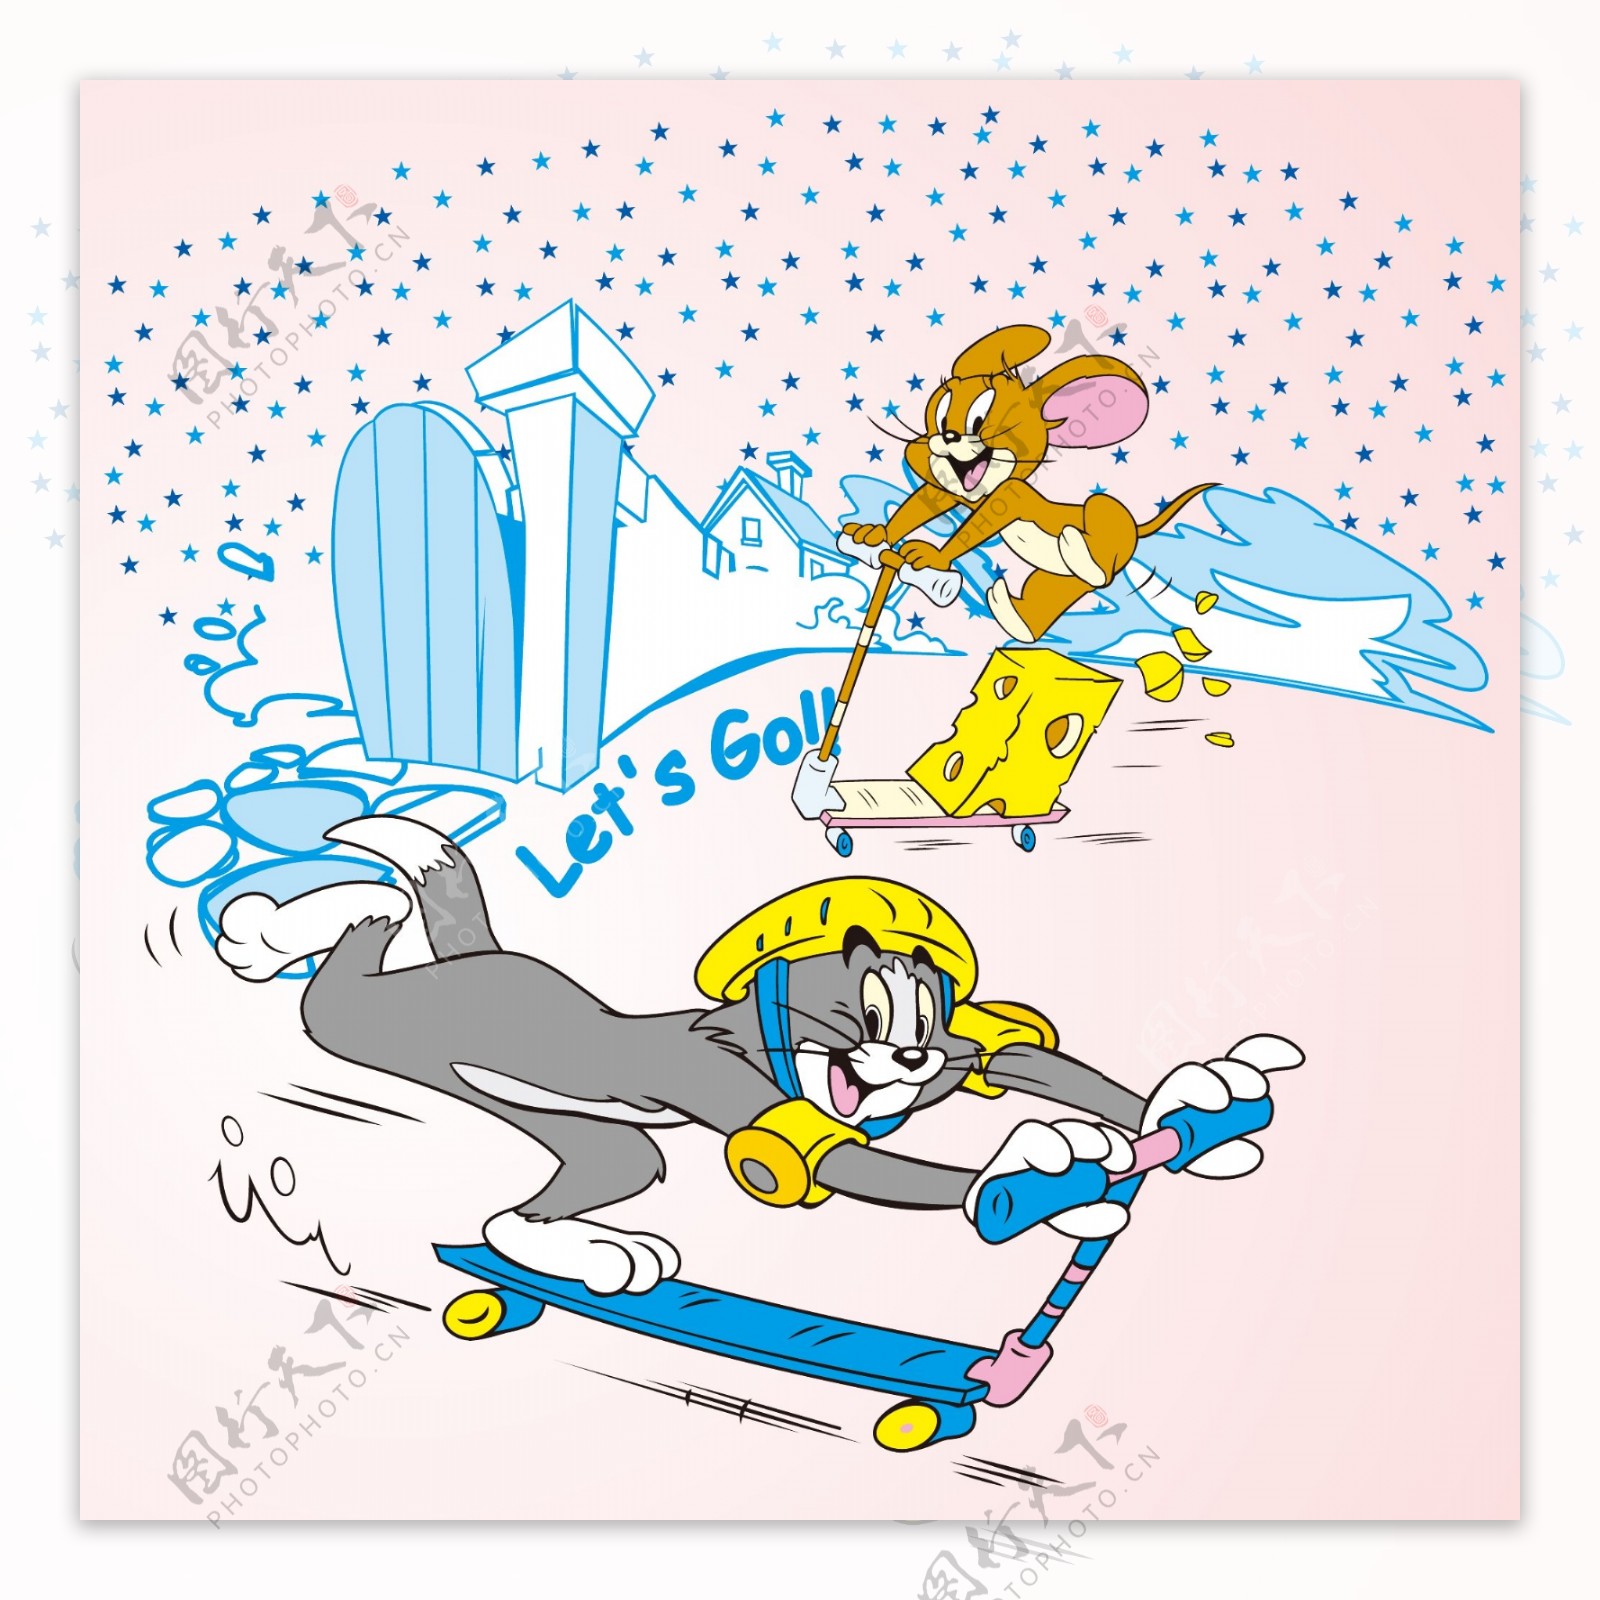 印花矢量图可爱卡通卡通形象猫和老鼠滑板车免费素材